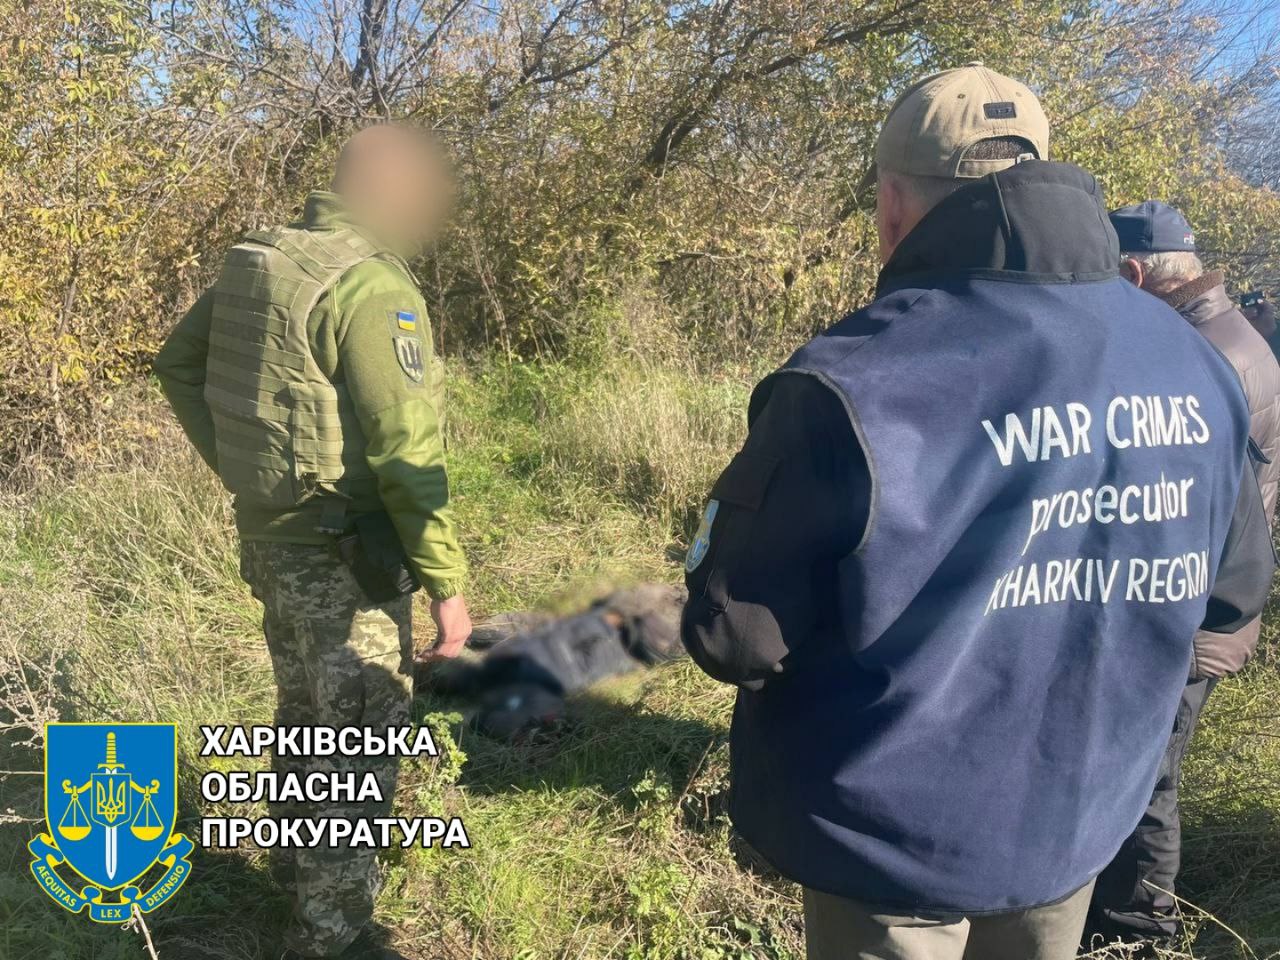 19-річний хлопець пройшов 1,5 км і помер у посадці: знайшли 26 жертву розстрілу автоколони на Харківщині